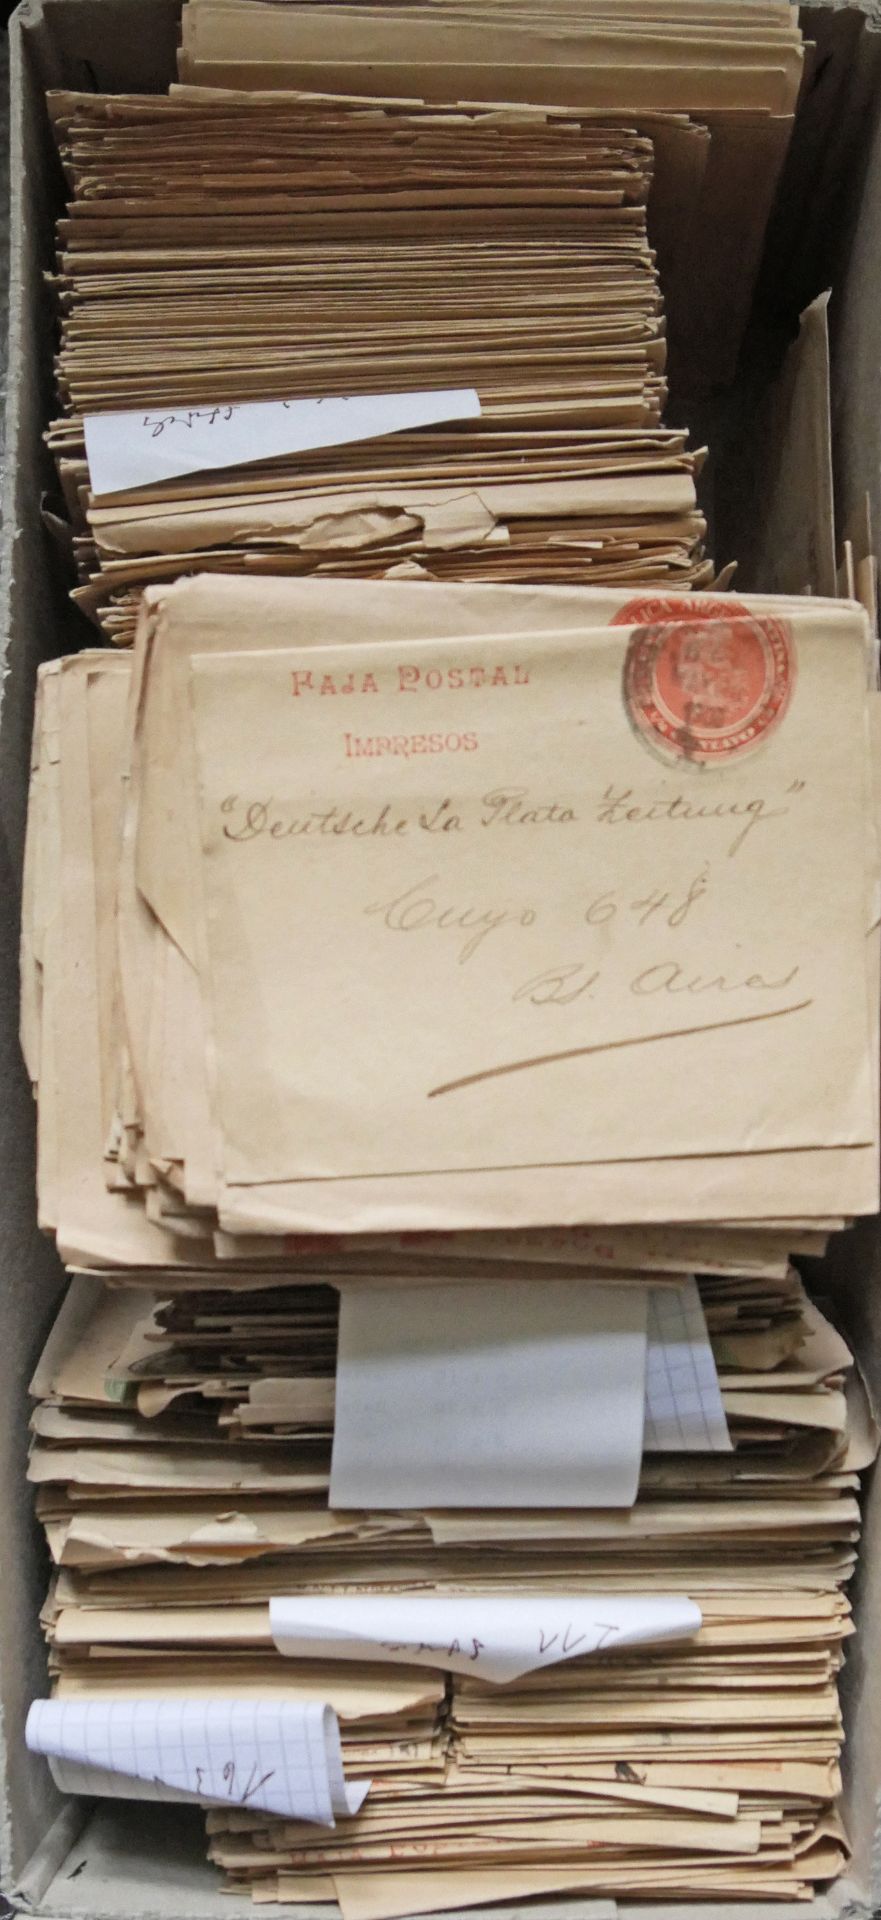 Argentinien, 1900, 1 Karton mit Bestand von über 1100 Streifbändern, fast alle gebraucht, dabei auch